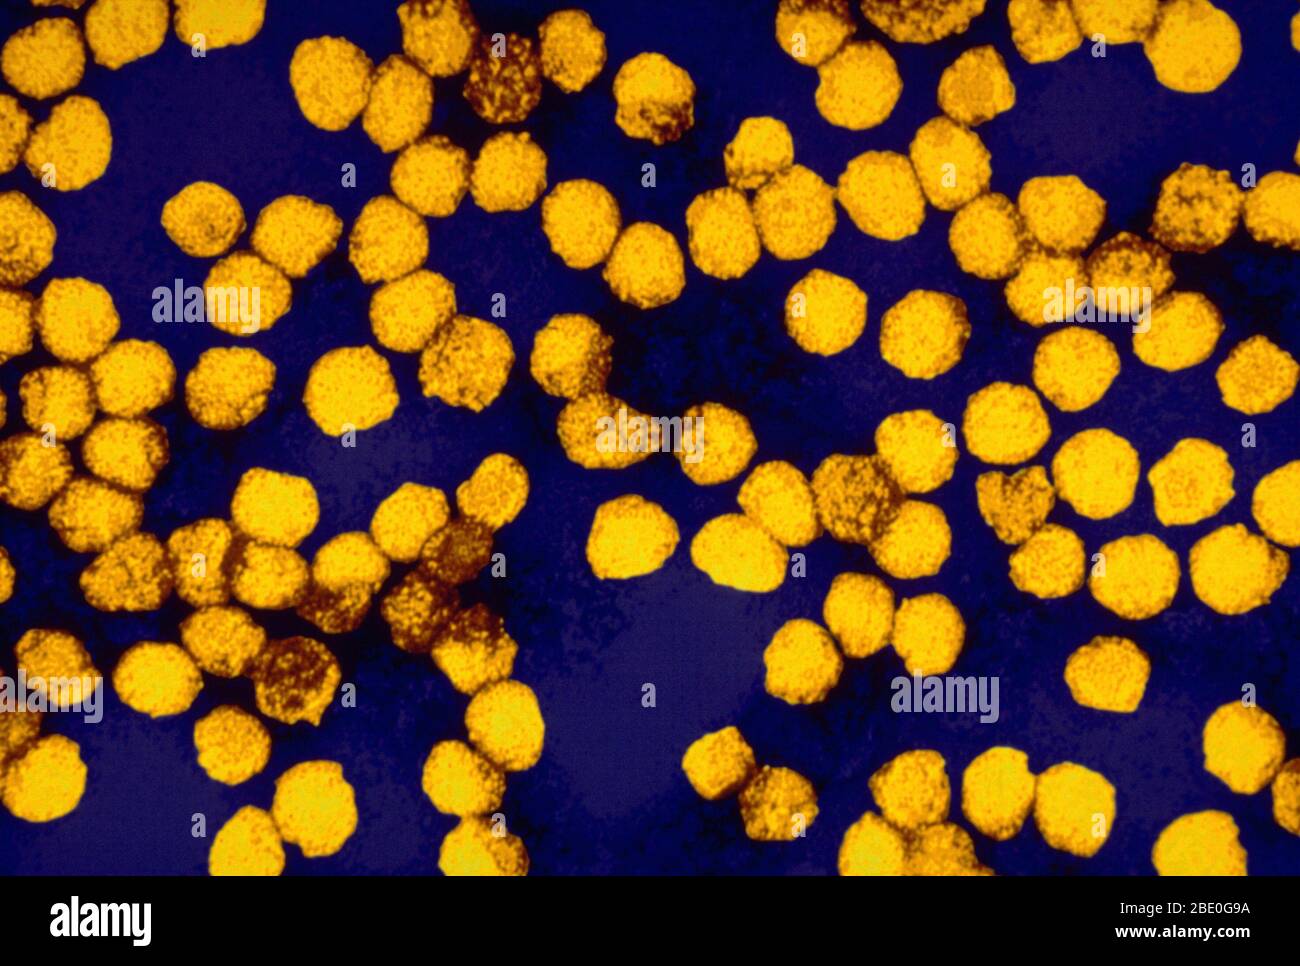 Micrografia elettronica a trasmissione con miglioramento del colore (TEM) dei virioni del virus della febbre gialla. La febbre gialla è causata dal virus della febbre gialla della famiglia Flaviviridae. Fu la prima malattia che si dimostrò trasmissibile da siero umano filtrato e trasmessa da zanzare, da Walter Reed intorno al 1900. L'RNA a singolo filamento, senso positivo, è lungo circa 11,000 nucleotidi e ha un singolo frame di lettura aperto che codifica una poliproteina. La febbre gialla è una malattia virale di durata tipicamente breve. Nella maggior parte dei casi, i sintomi includono febbre, brividi, perdita di appetito, nausea, dolori muscolari, in particolare nel bac Foto Stock